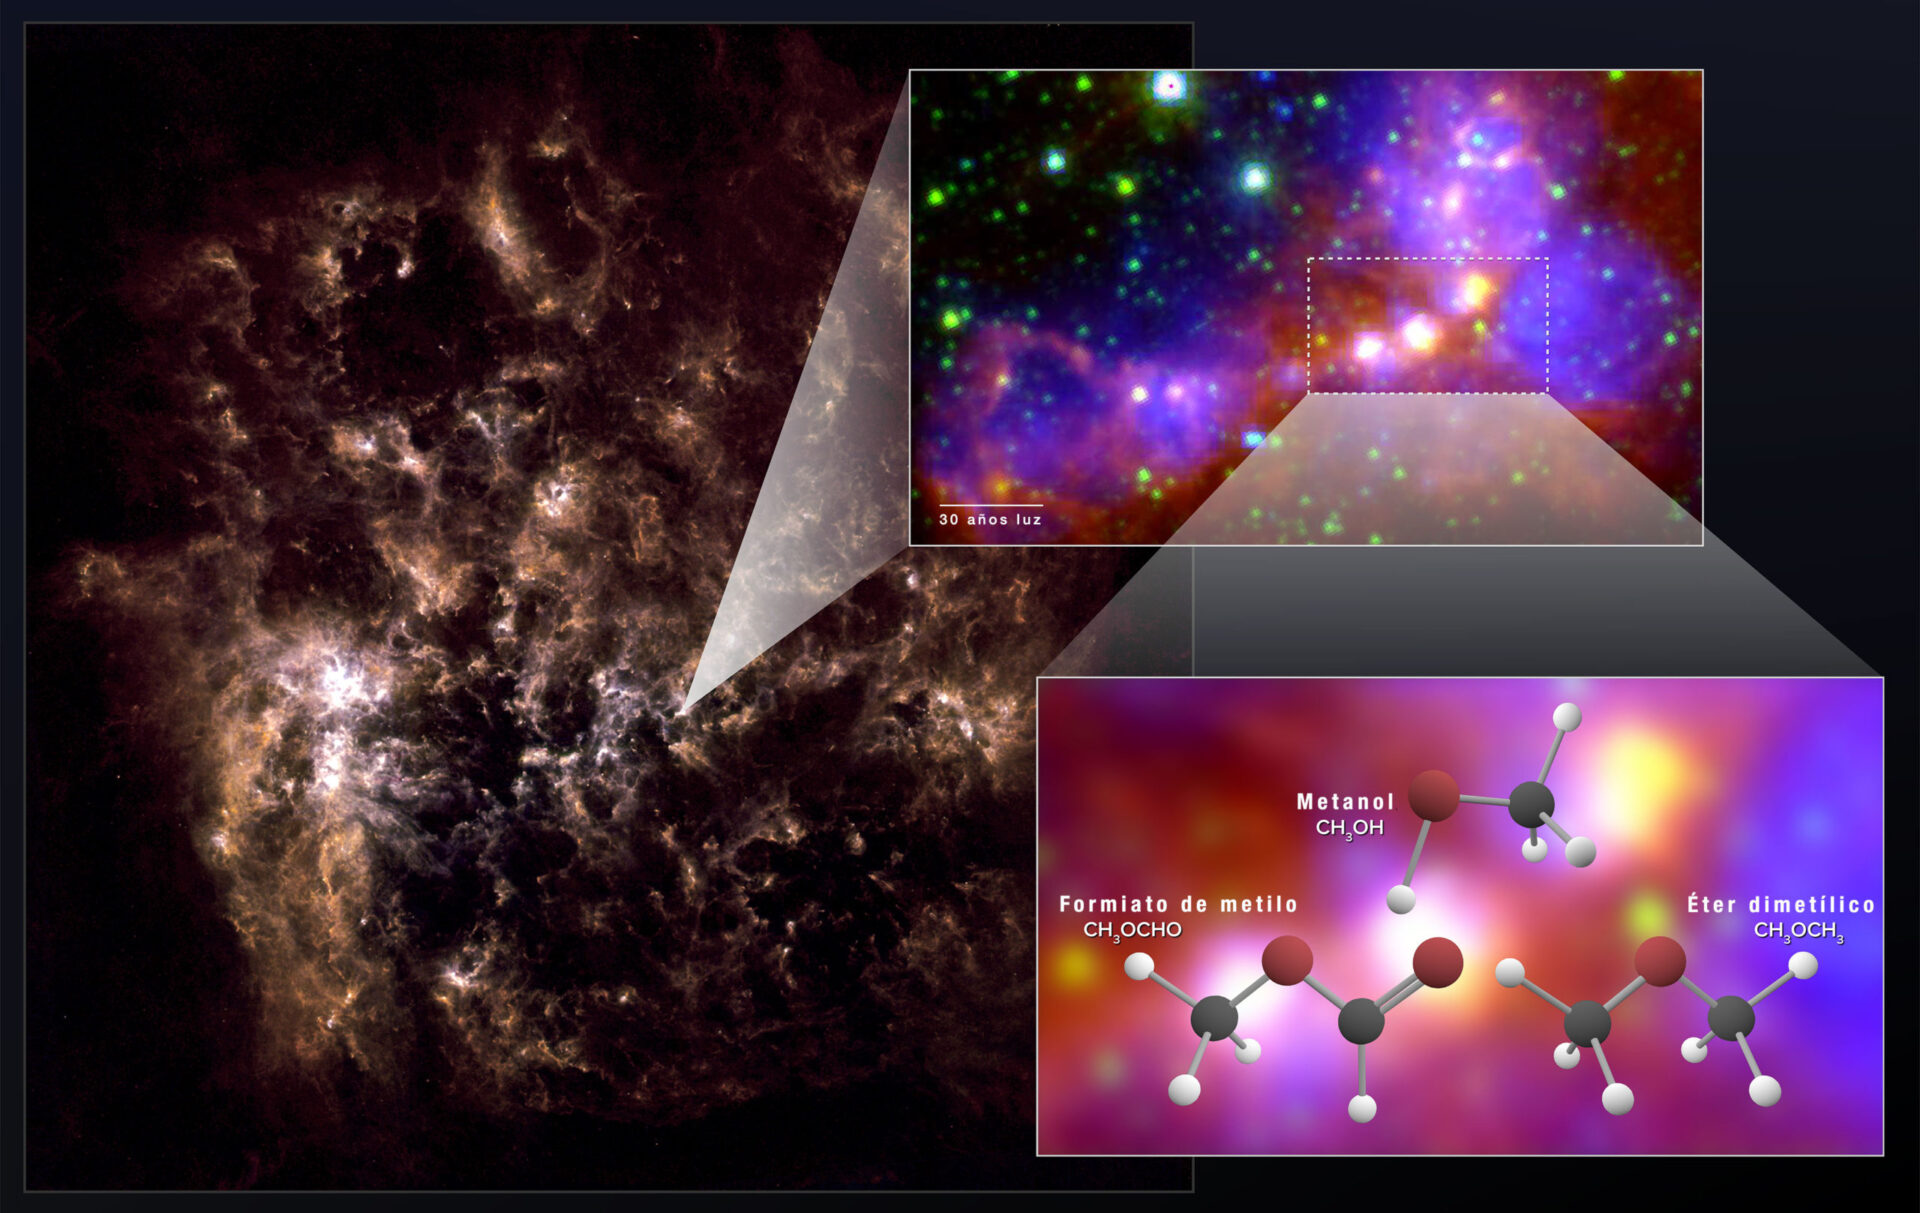 Gracias a ALMA, los astrónomos descubrieron "huellas" químicas de metanol, éter dimetílico y formiato de metilo en la Gran Nube de Magallanes. El éter dimetílico y el formiato de metilo son las moléculas orgánicas más grandes descubiertas con seguridad fuera de la Vía Láctea. La imagen de la Gran Nube de Magallanes en varios cuadros muestra las zonas protoestelares observadas por ALMA. La galaxia entera a la izquierda es una imagen en infrarrojo lejano obtenida por el observatorio Herschel. La imagen ampliada se generó combinando datos de infrarrojo medio del observatorio Herschel y datos de luz visible (H-alpha) del telescopio de Blanco, un telescopio de 4 metros. Créditos: NASA/GSFC; NRAO/AUI/NSF; ALMA (ESO/NAOJ/NRAO); Herschel/ESA; NOAO